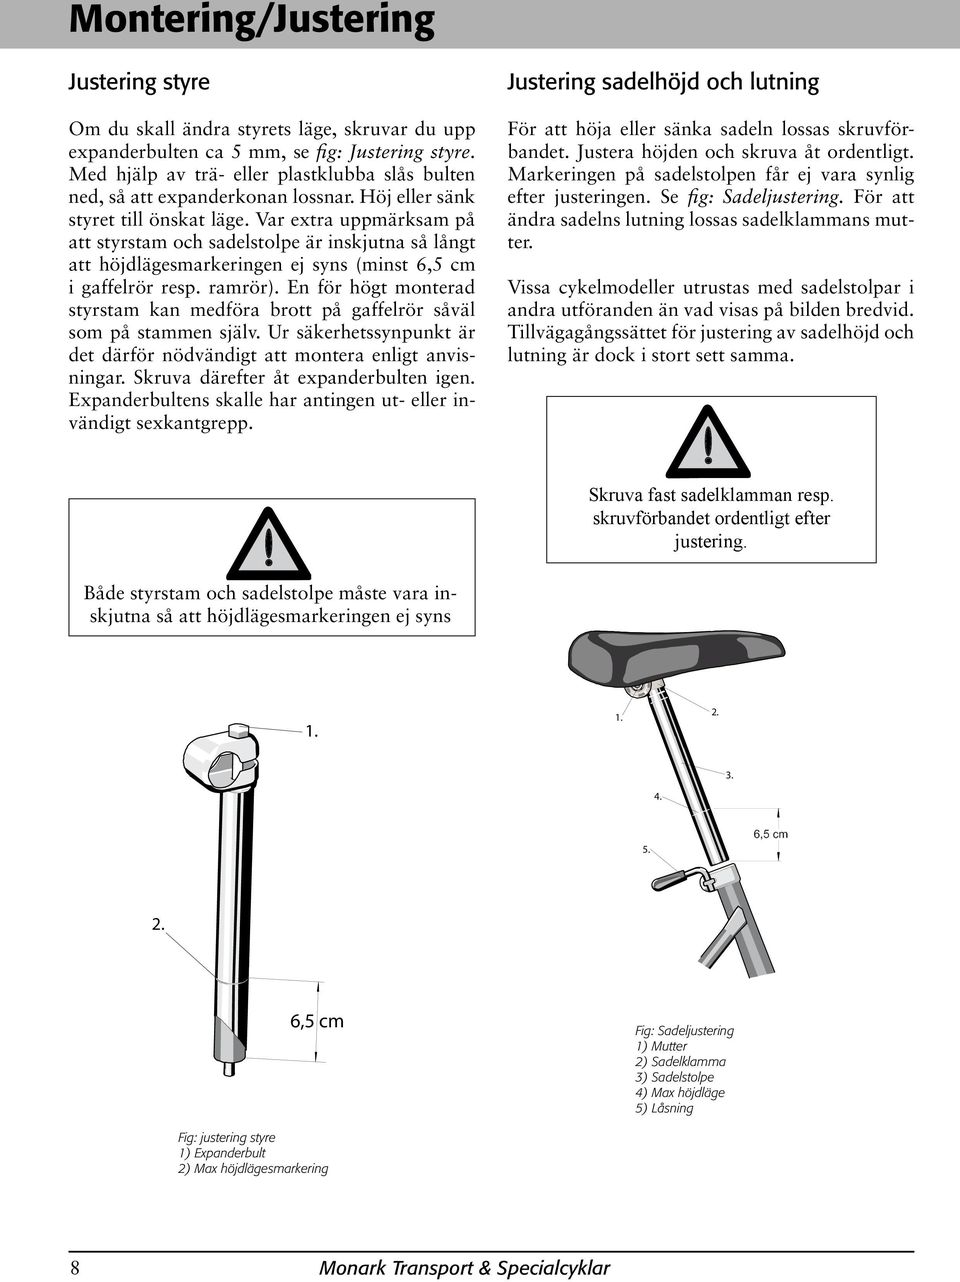 Var extra uppmärksam på att styrstam och sadelstolpe är inskjutna så långt att höjdlägesmarkeringen ej syns (minst 6,5 cm i gaffelrör resp. ramrör).